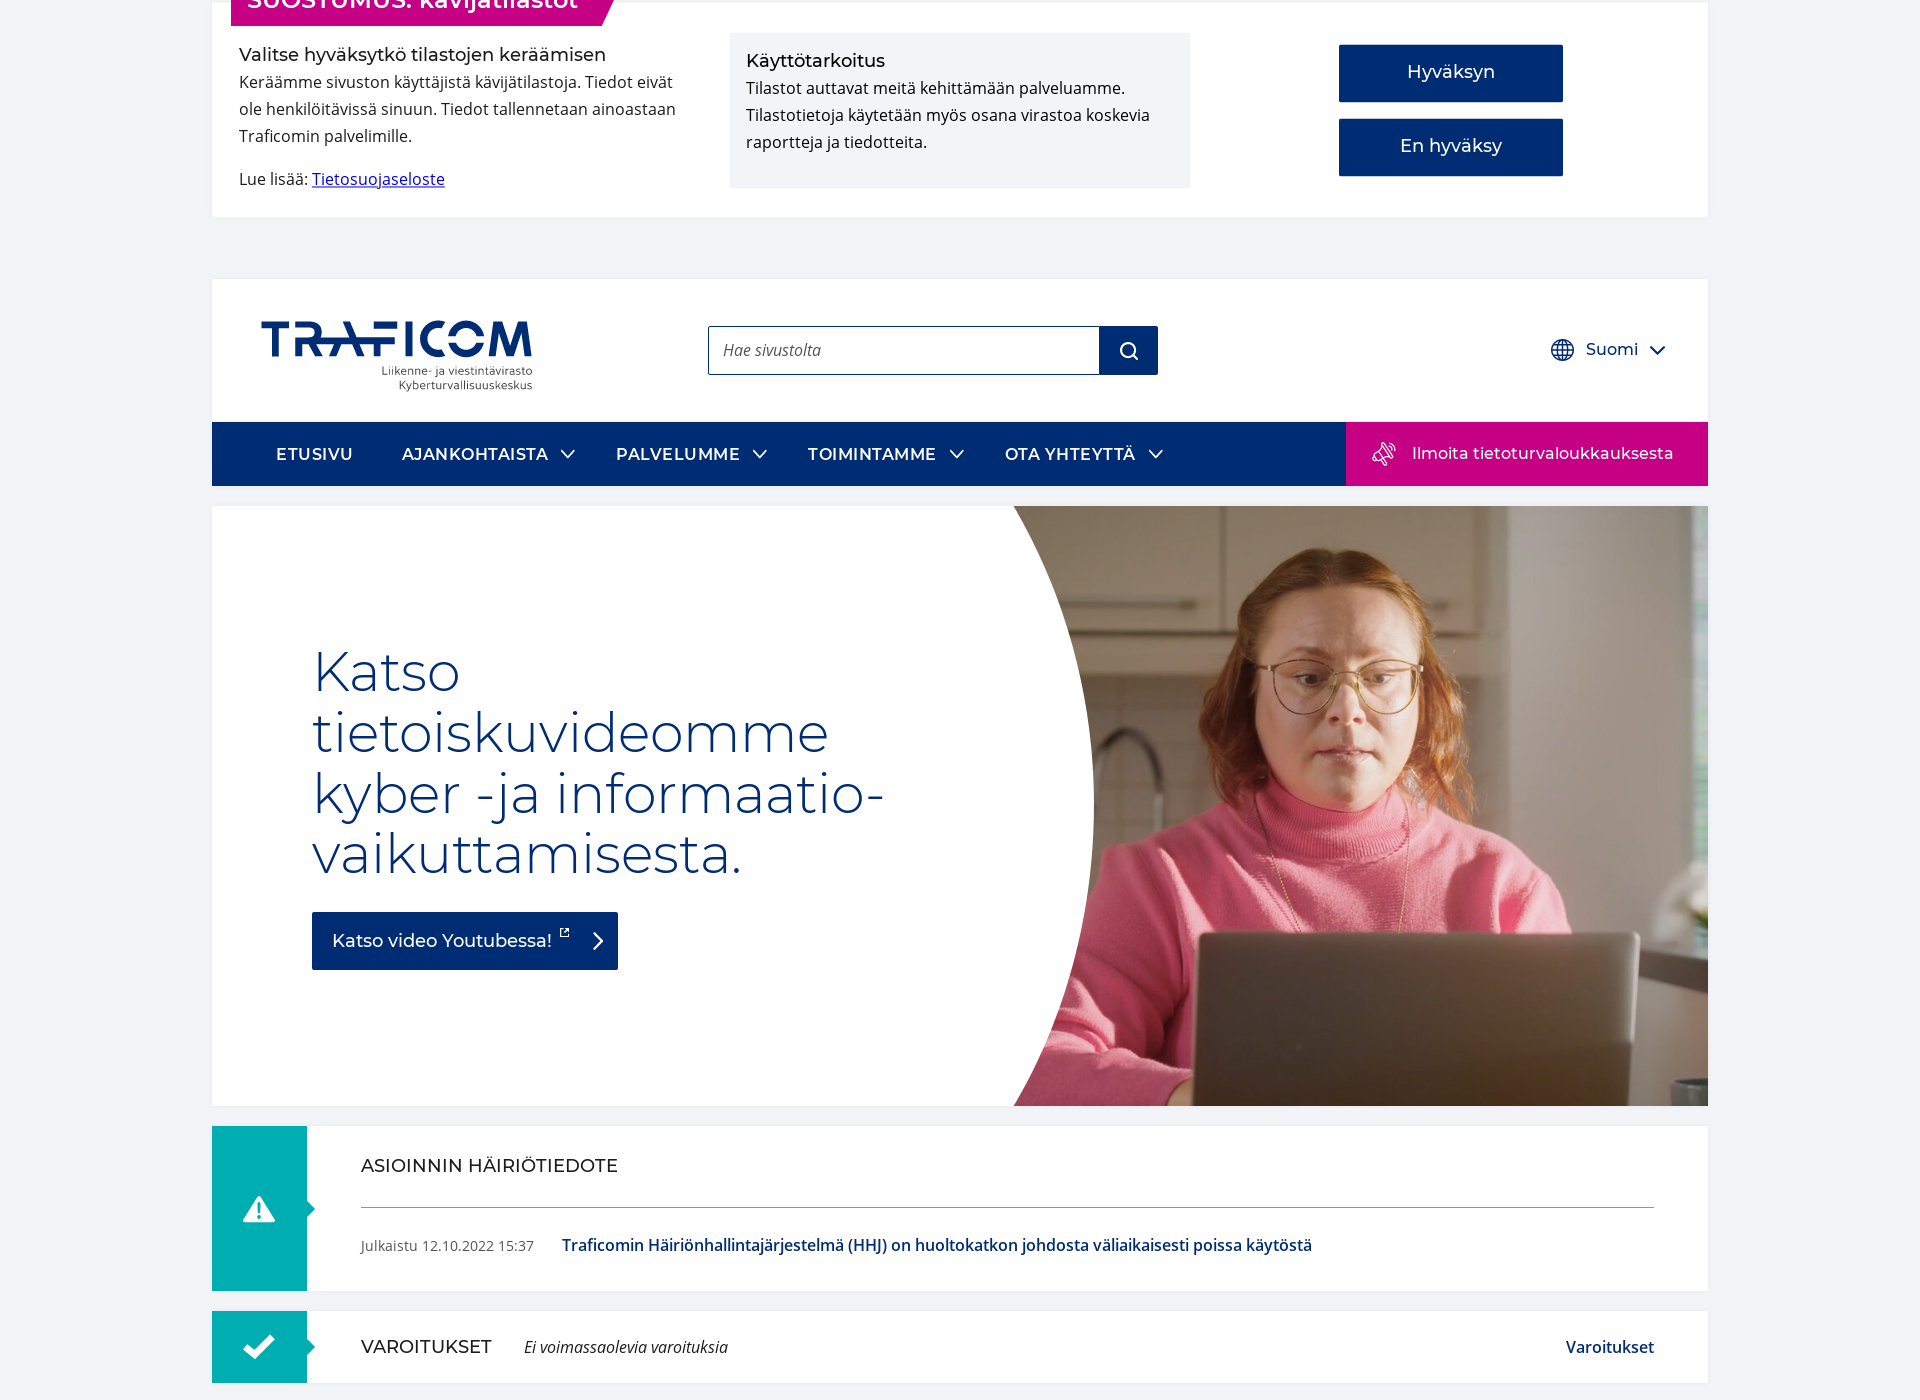 Näyttökuva kyberturvallisuuskeskus.fi